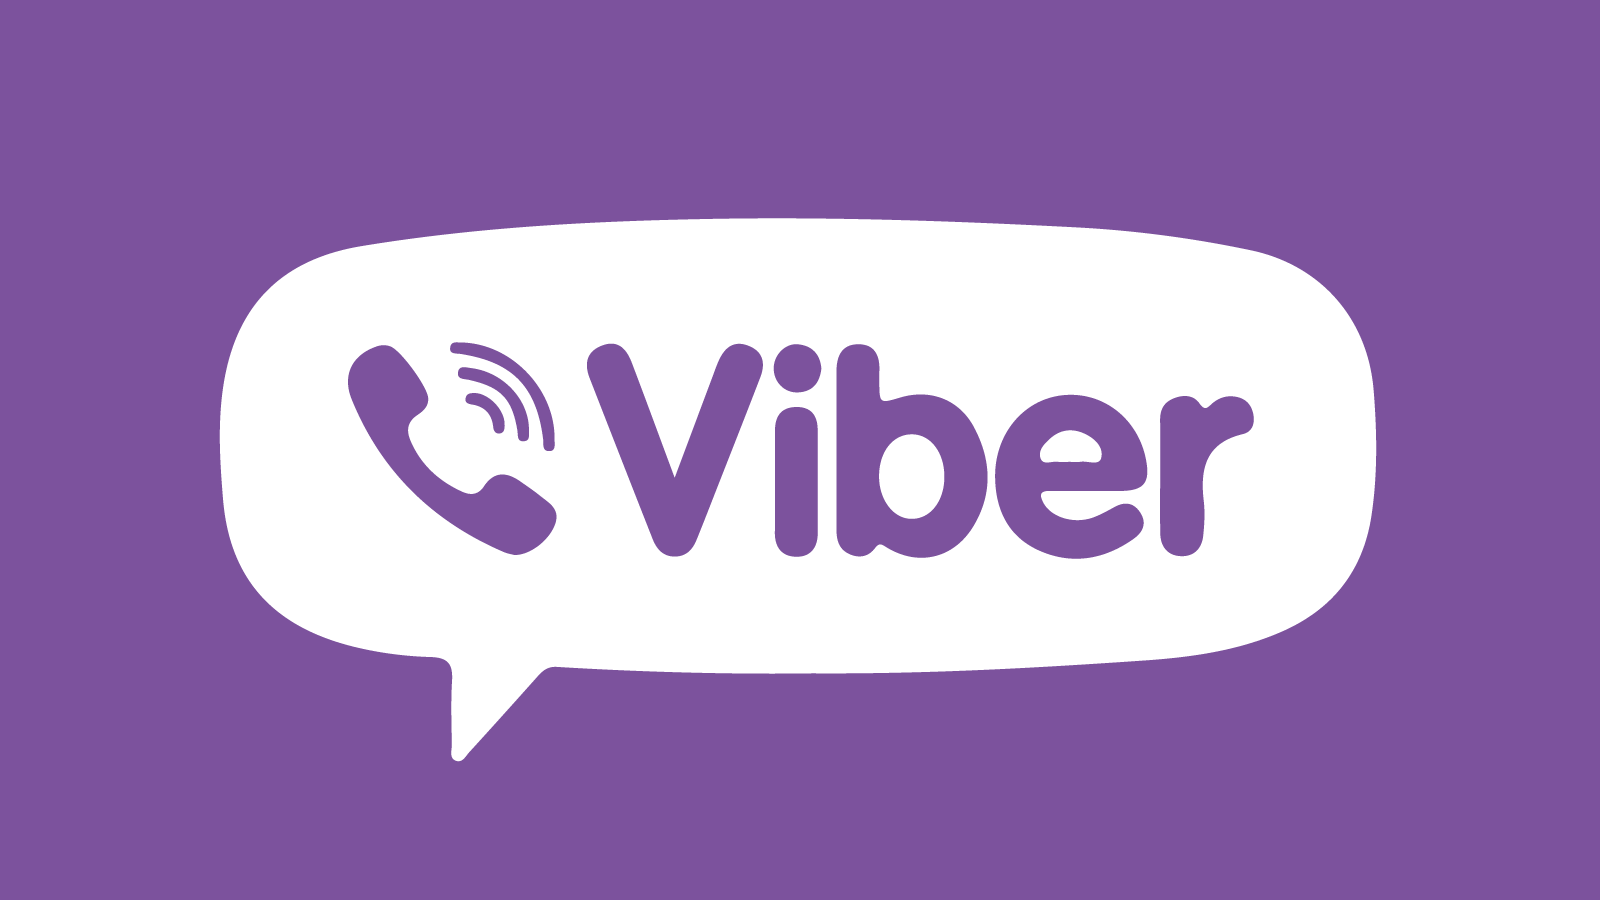 Η κυβέρνηση ανοίγει μια κοινότητα για τον κορωνοϊό στο Viber -Για την έγκυρη πληροφόρηση των πολιτών